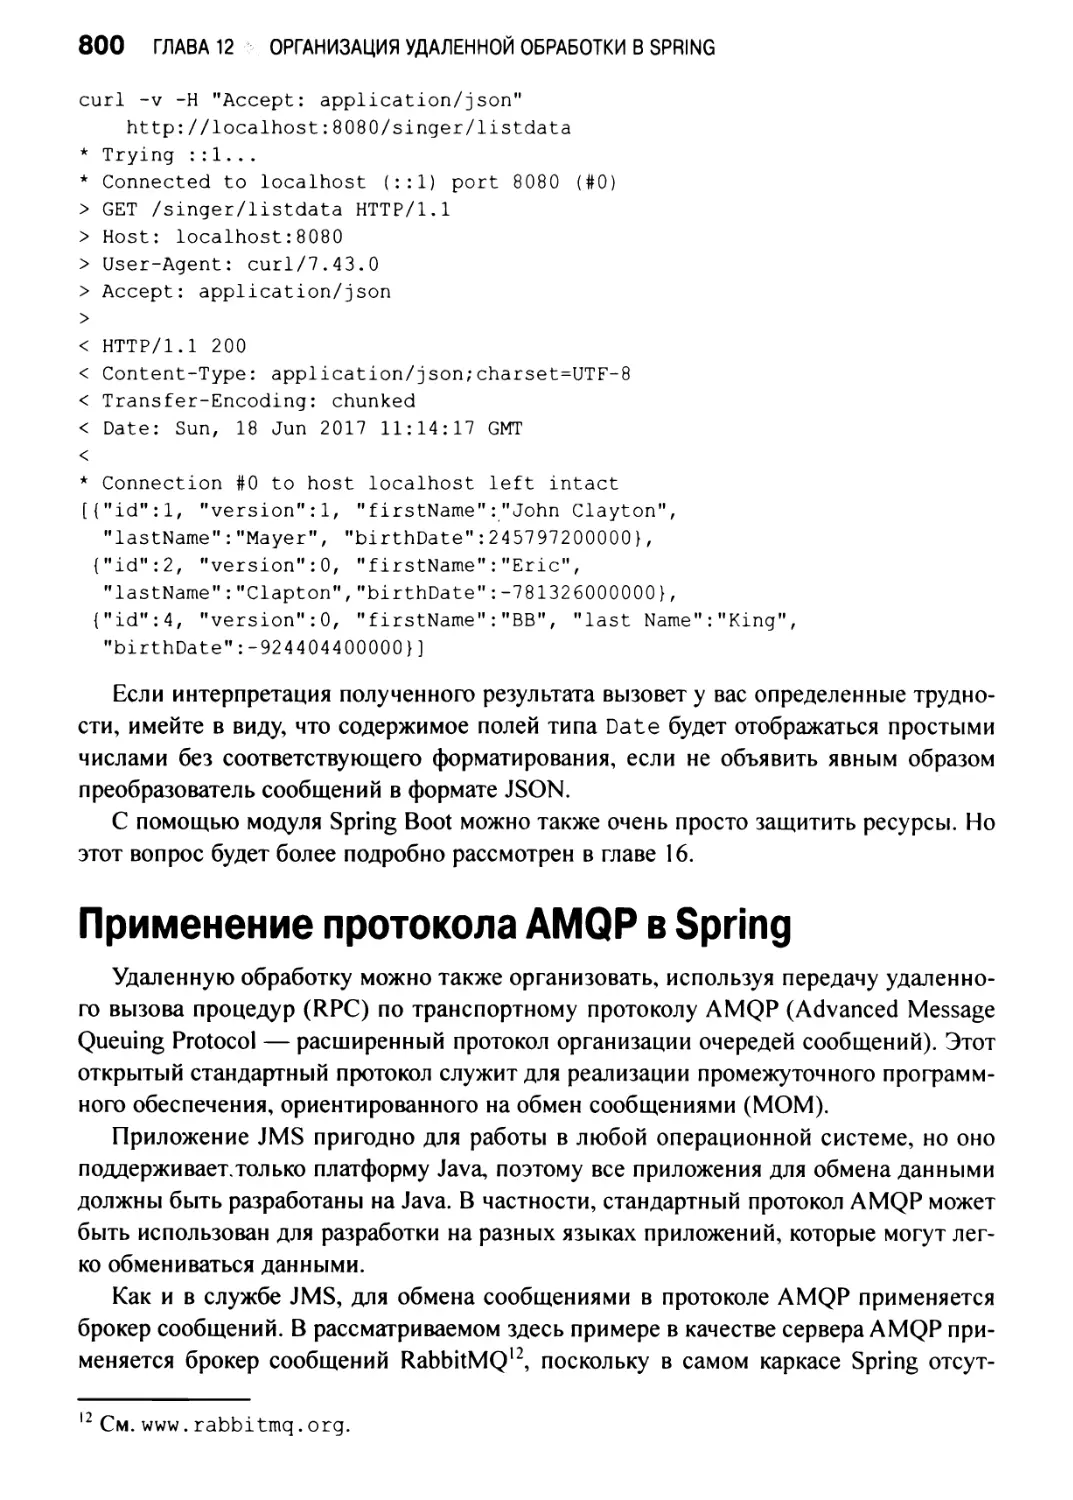 Применение протокола AMQP в Spring